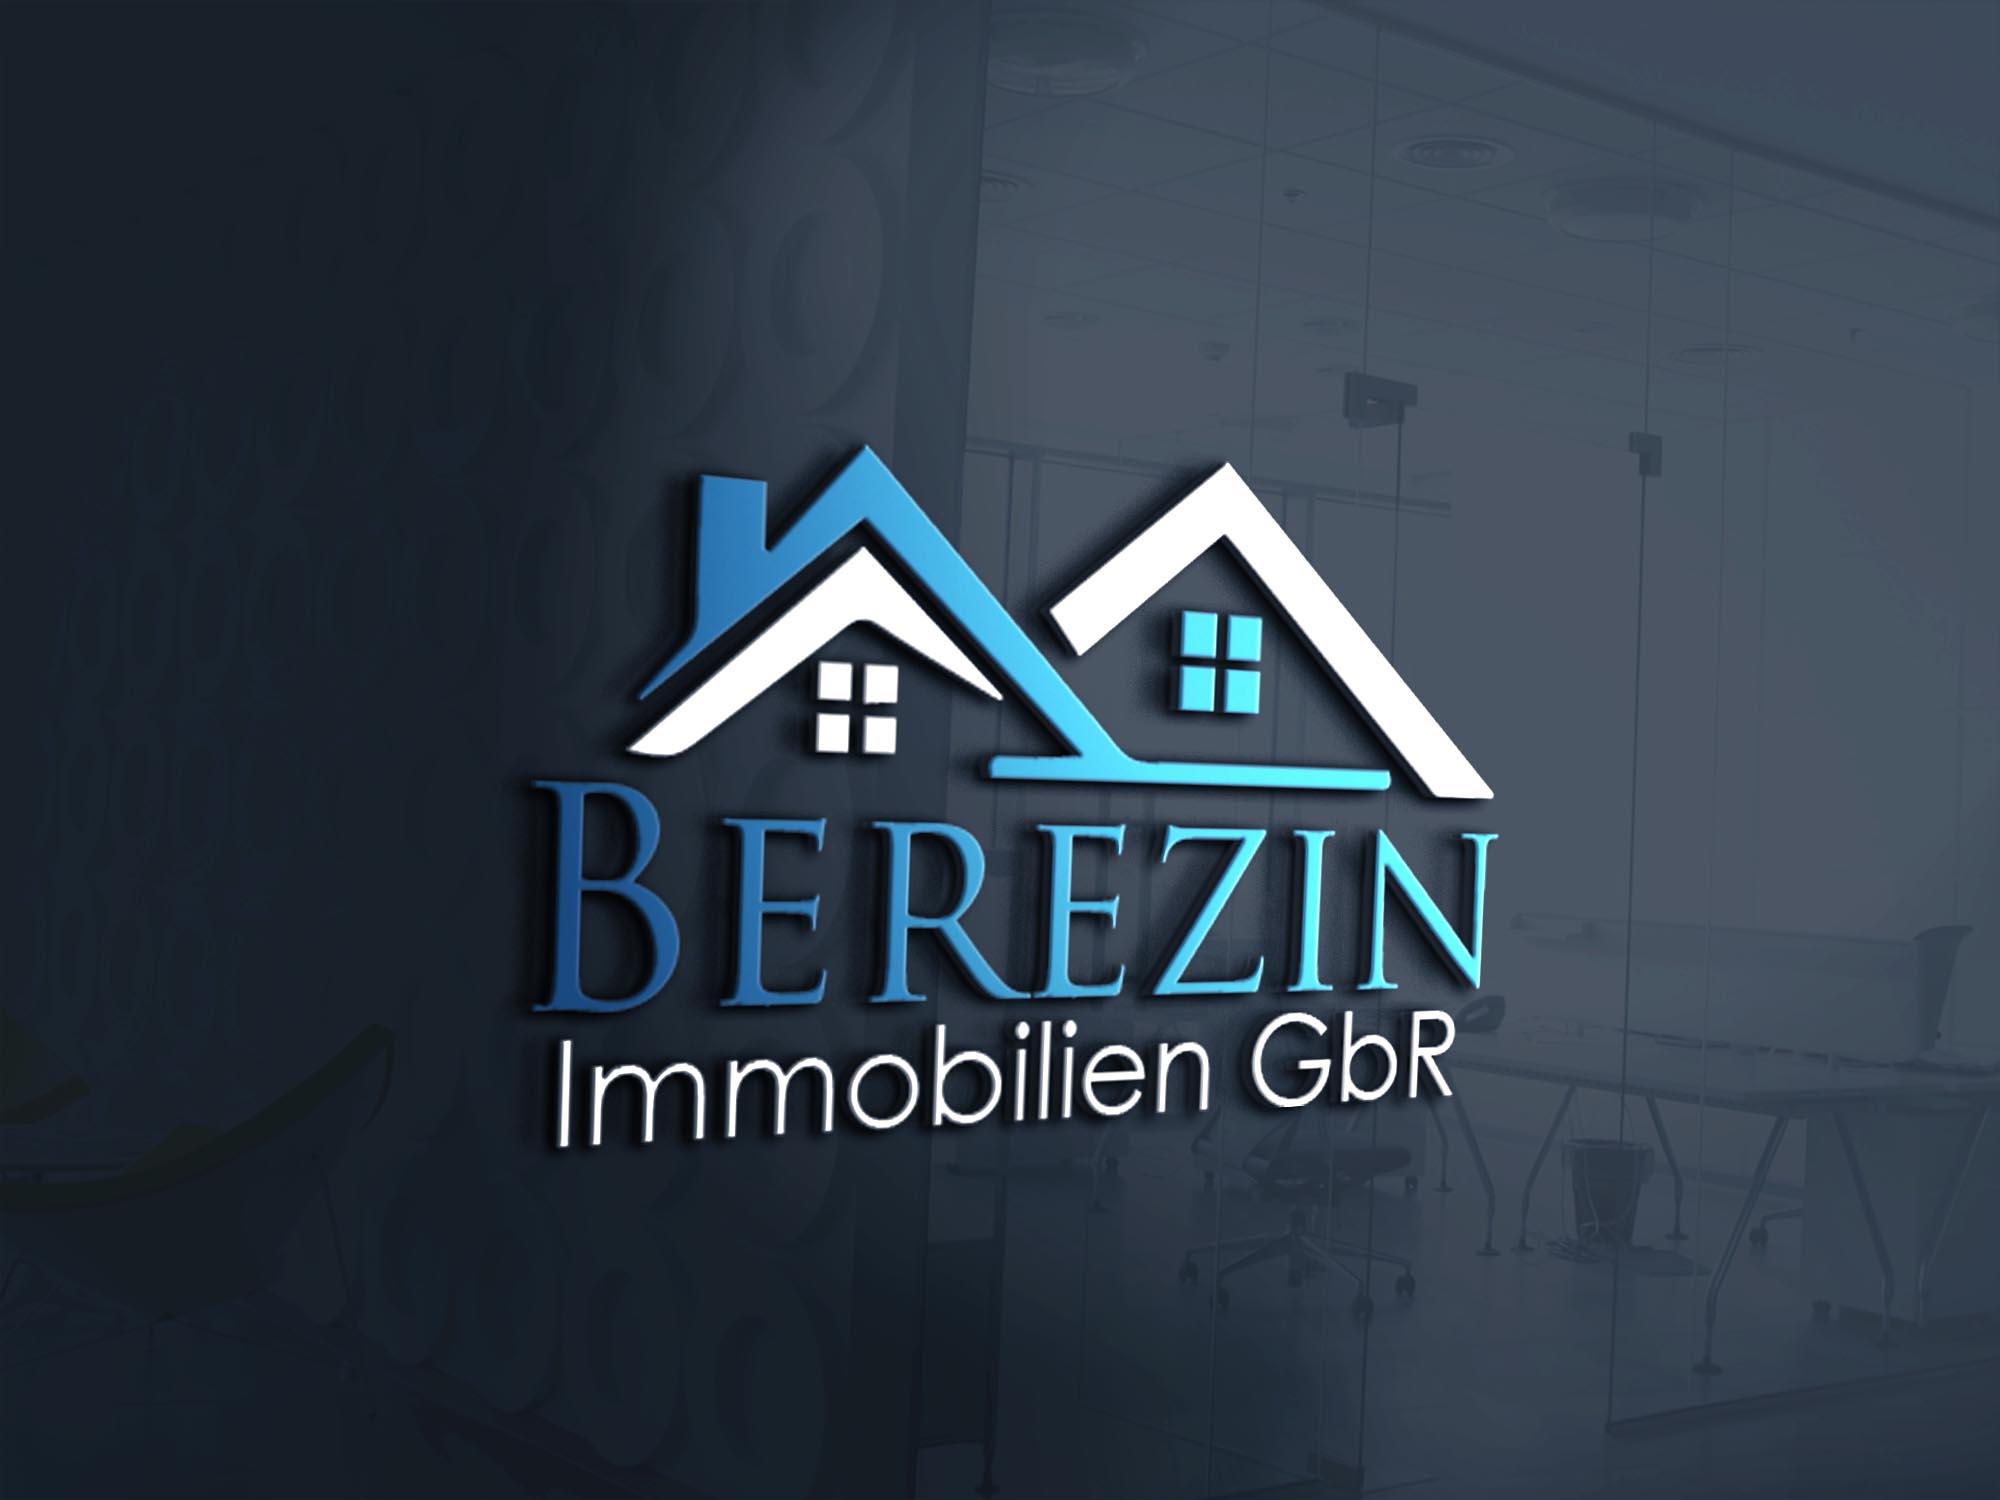 Berezin Immobilien GbR Logo in 3D